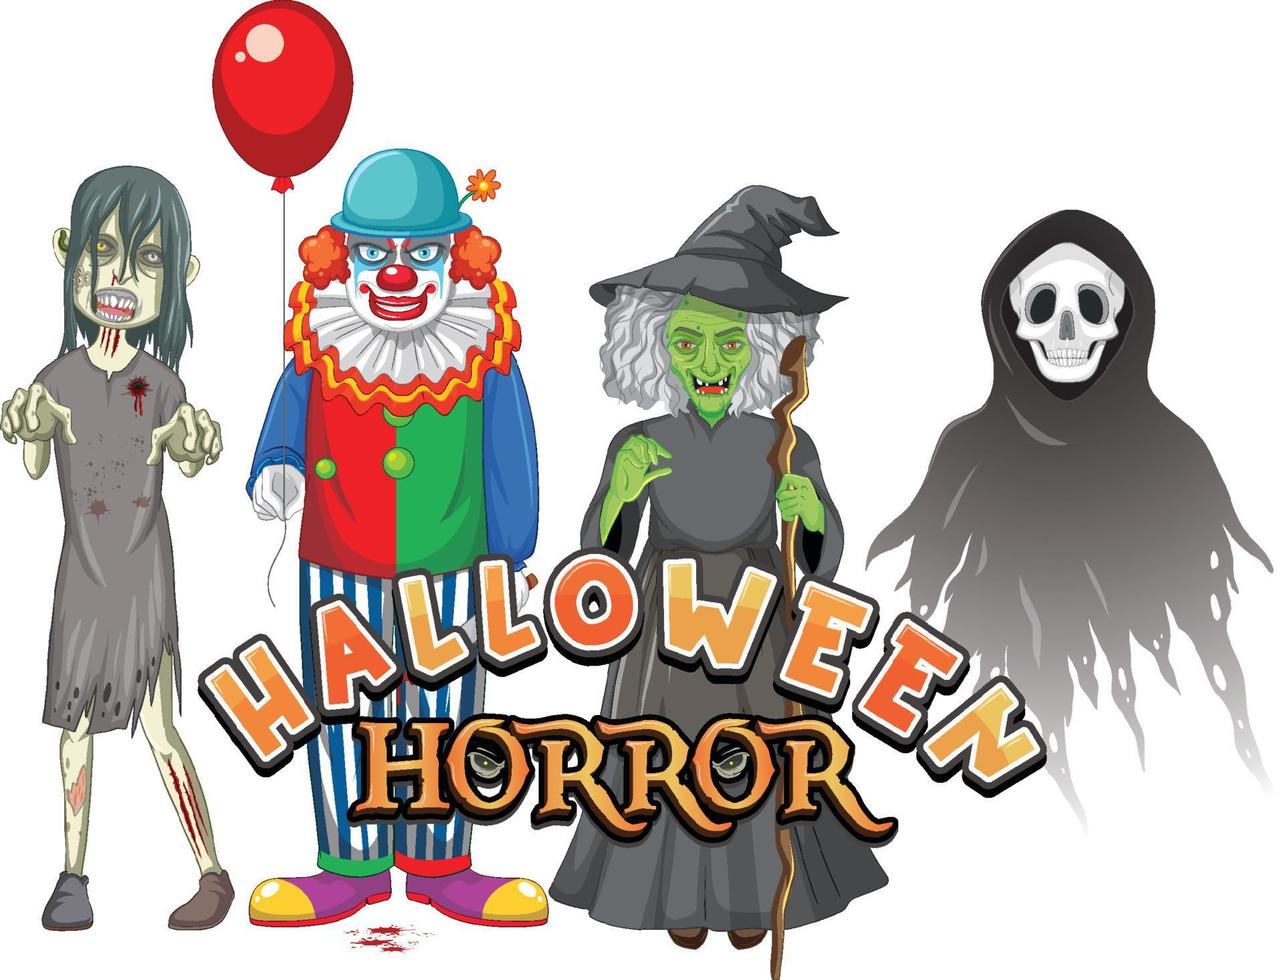 halloween horror tekstontwerp met halloween spookkarakters vector